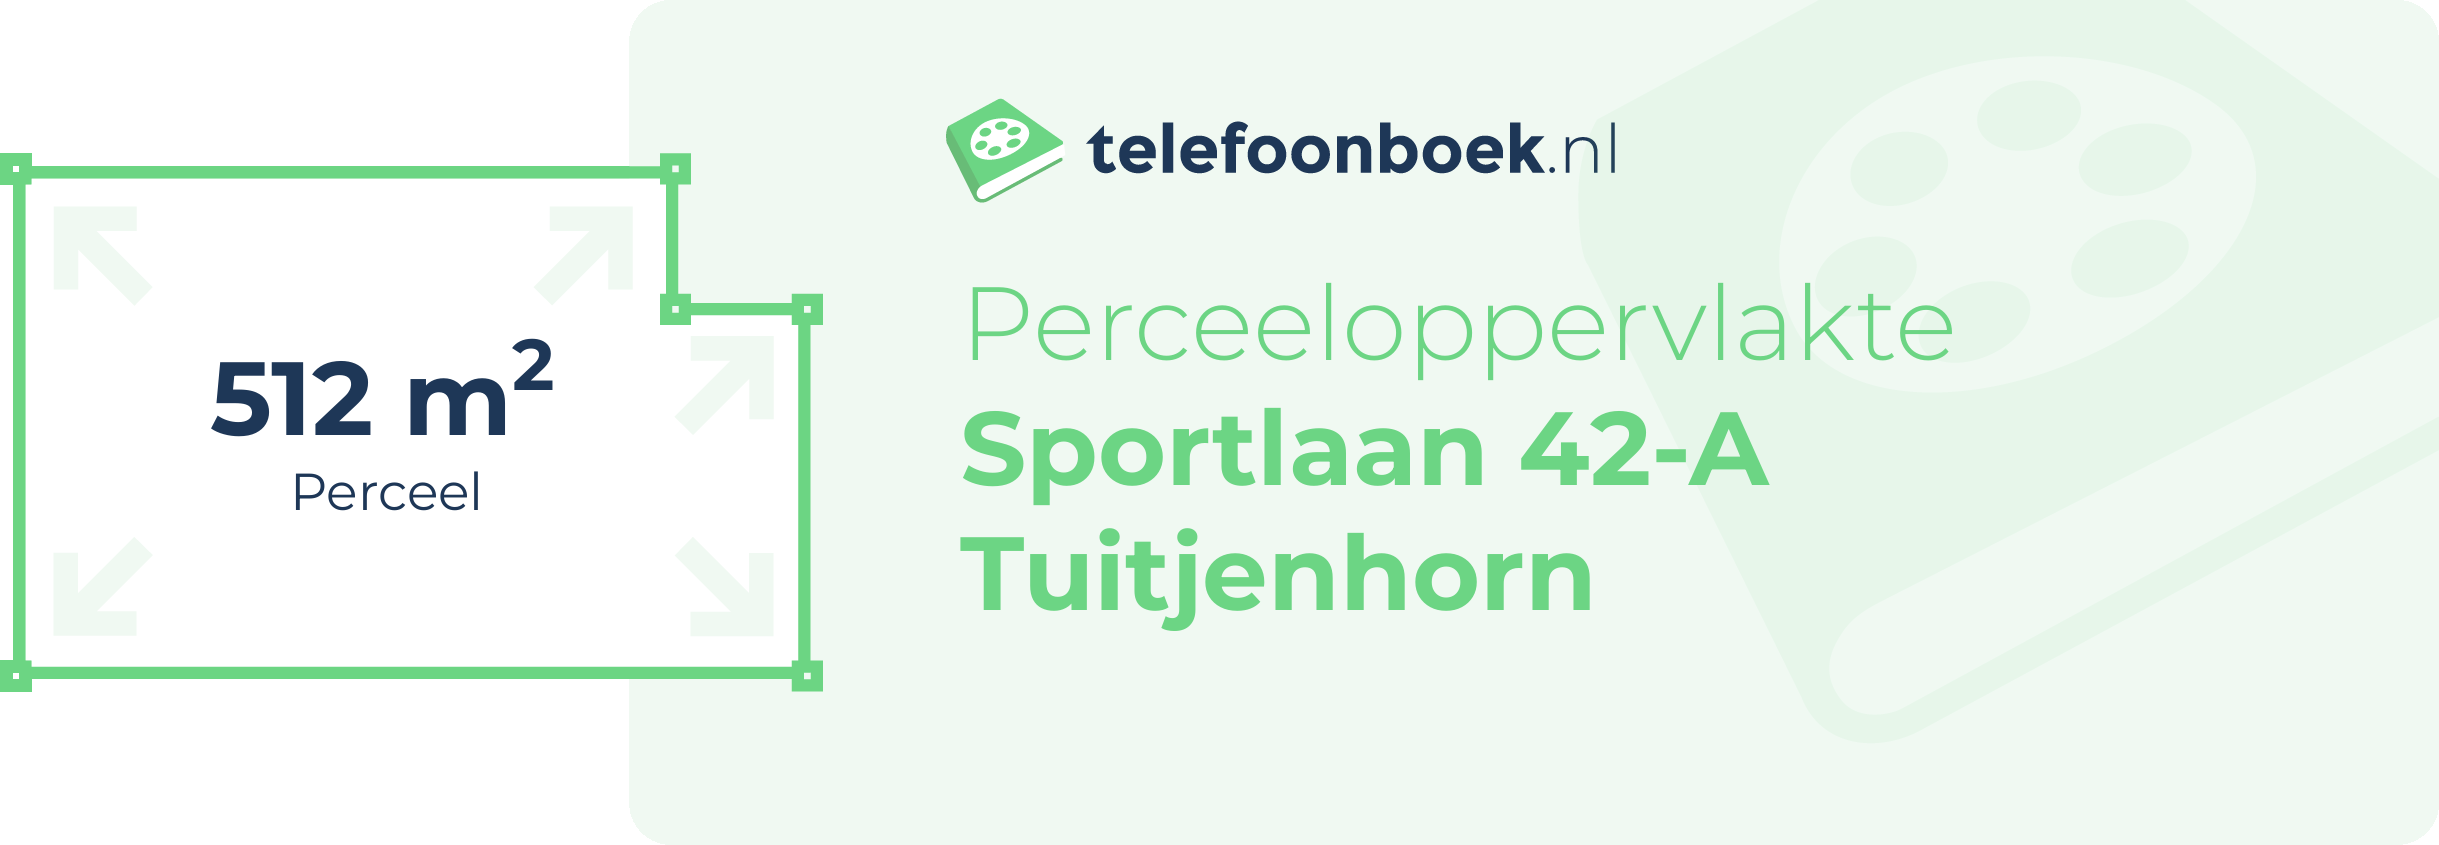 Perceeloppervlakte Sportlaan 42-A Tuitjenhorn